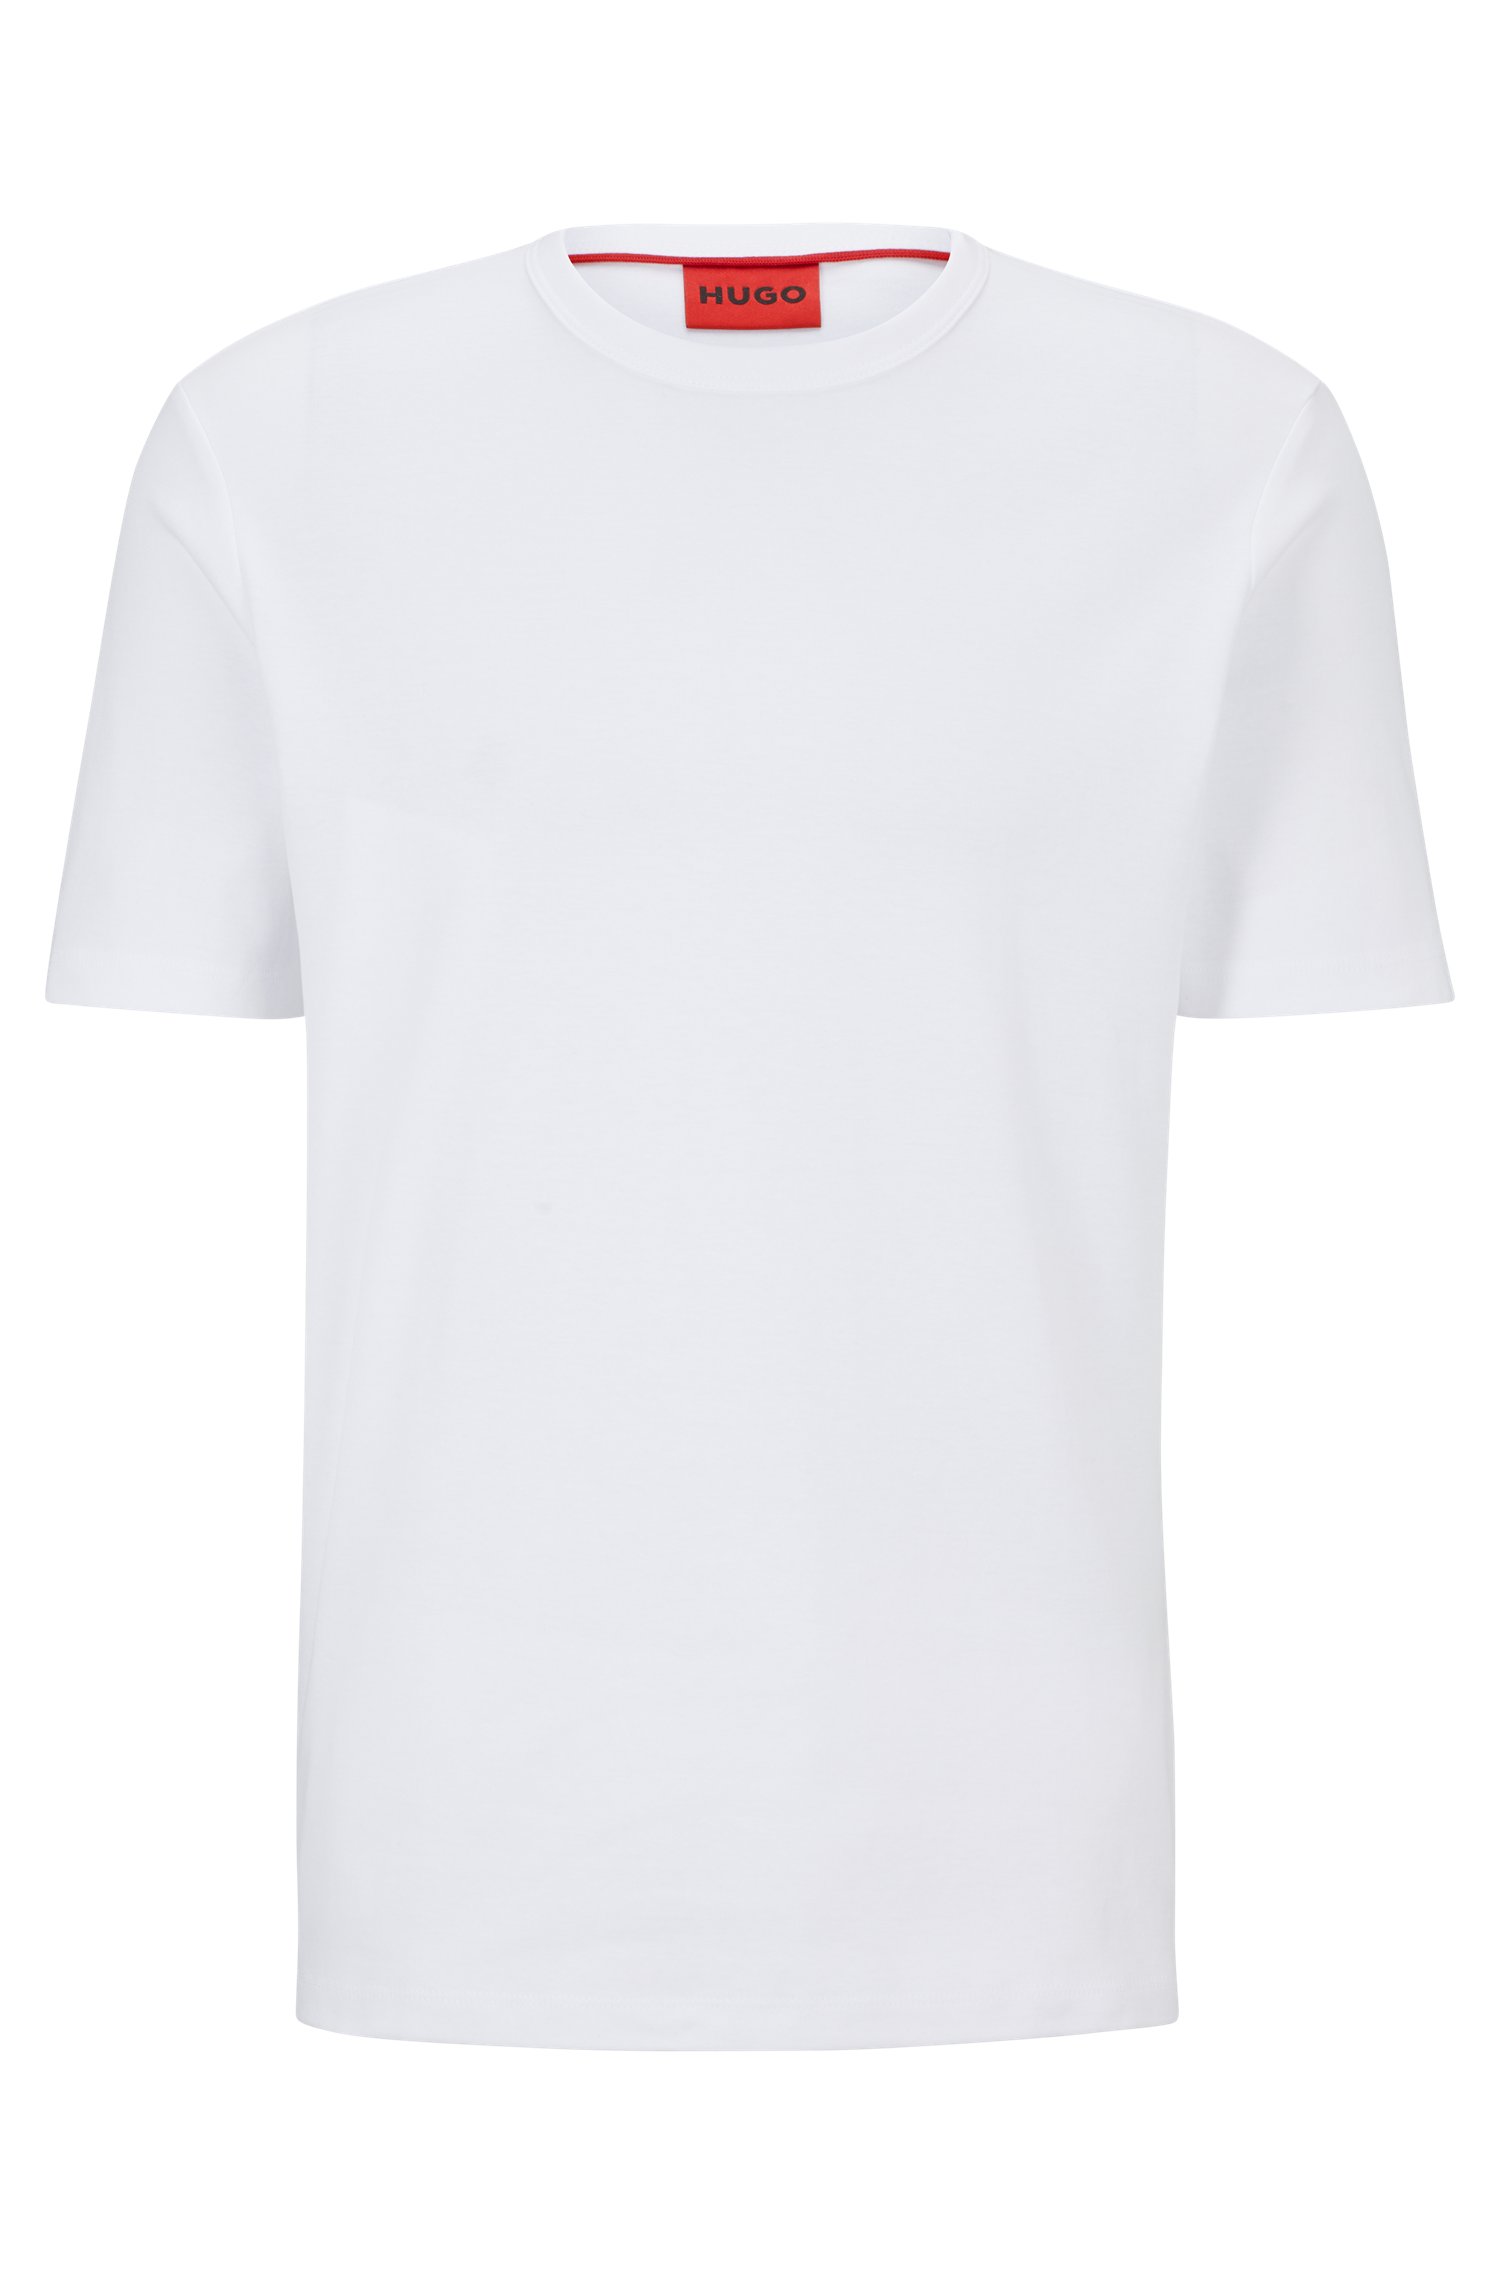 Футболка Hugo Pima-cotton Regular-fit With Contrast Logo, белый футболка hugo pima cotton regular fit with contrast logo чёрный